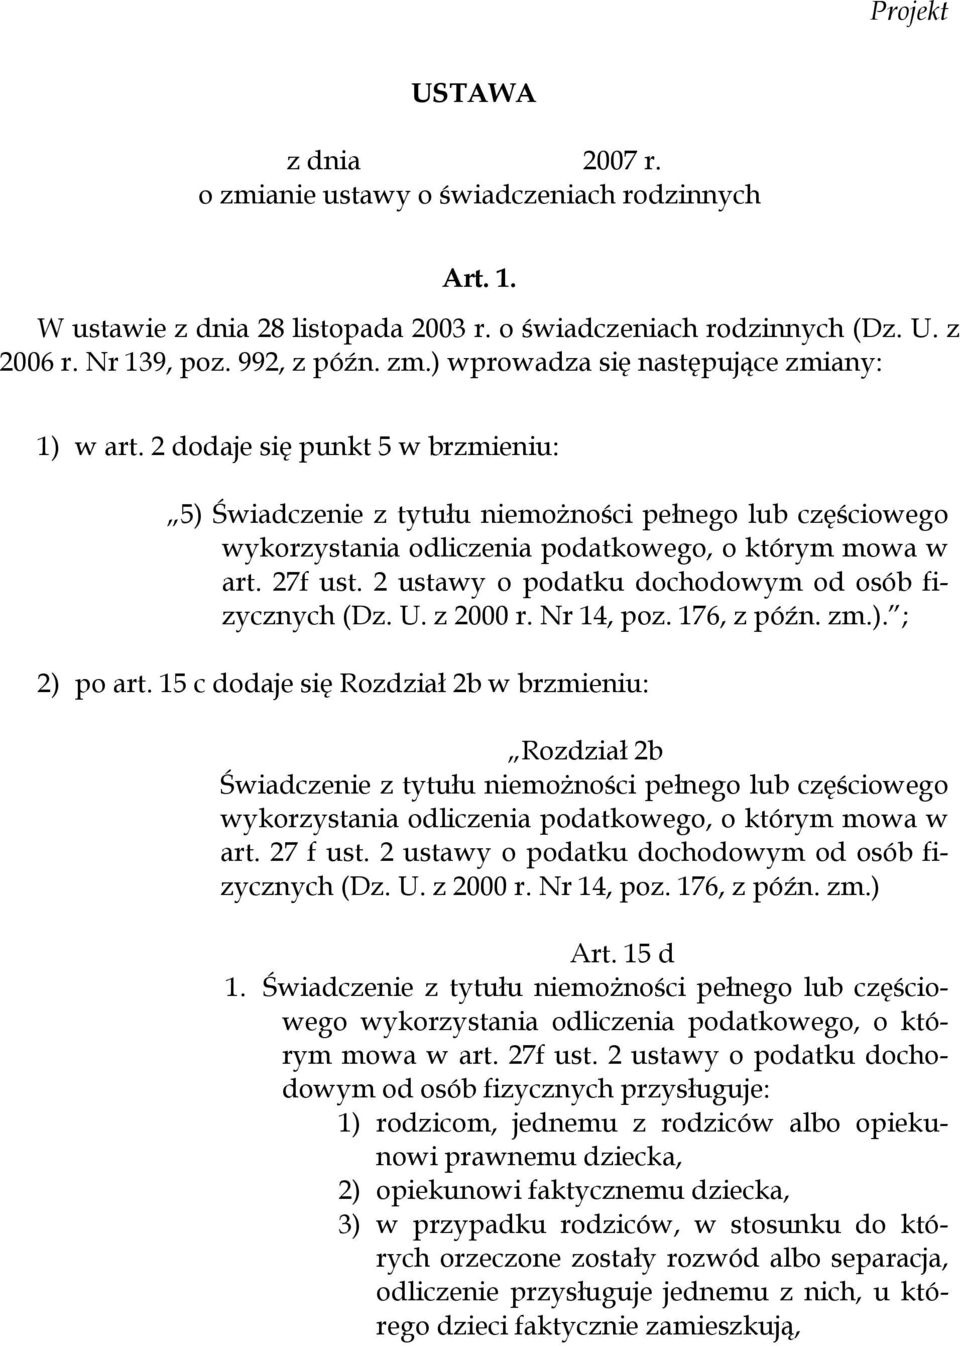 2 ustawy o podatku dochodowym od osób fizycznych (Dz. U. z 2000 r. Nr 14, poz. 176, z późn. zm.). ; 2) po art.